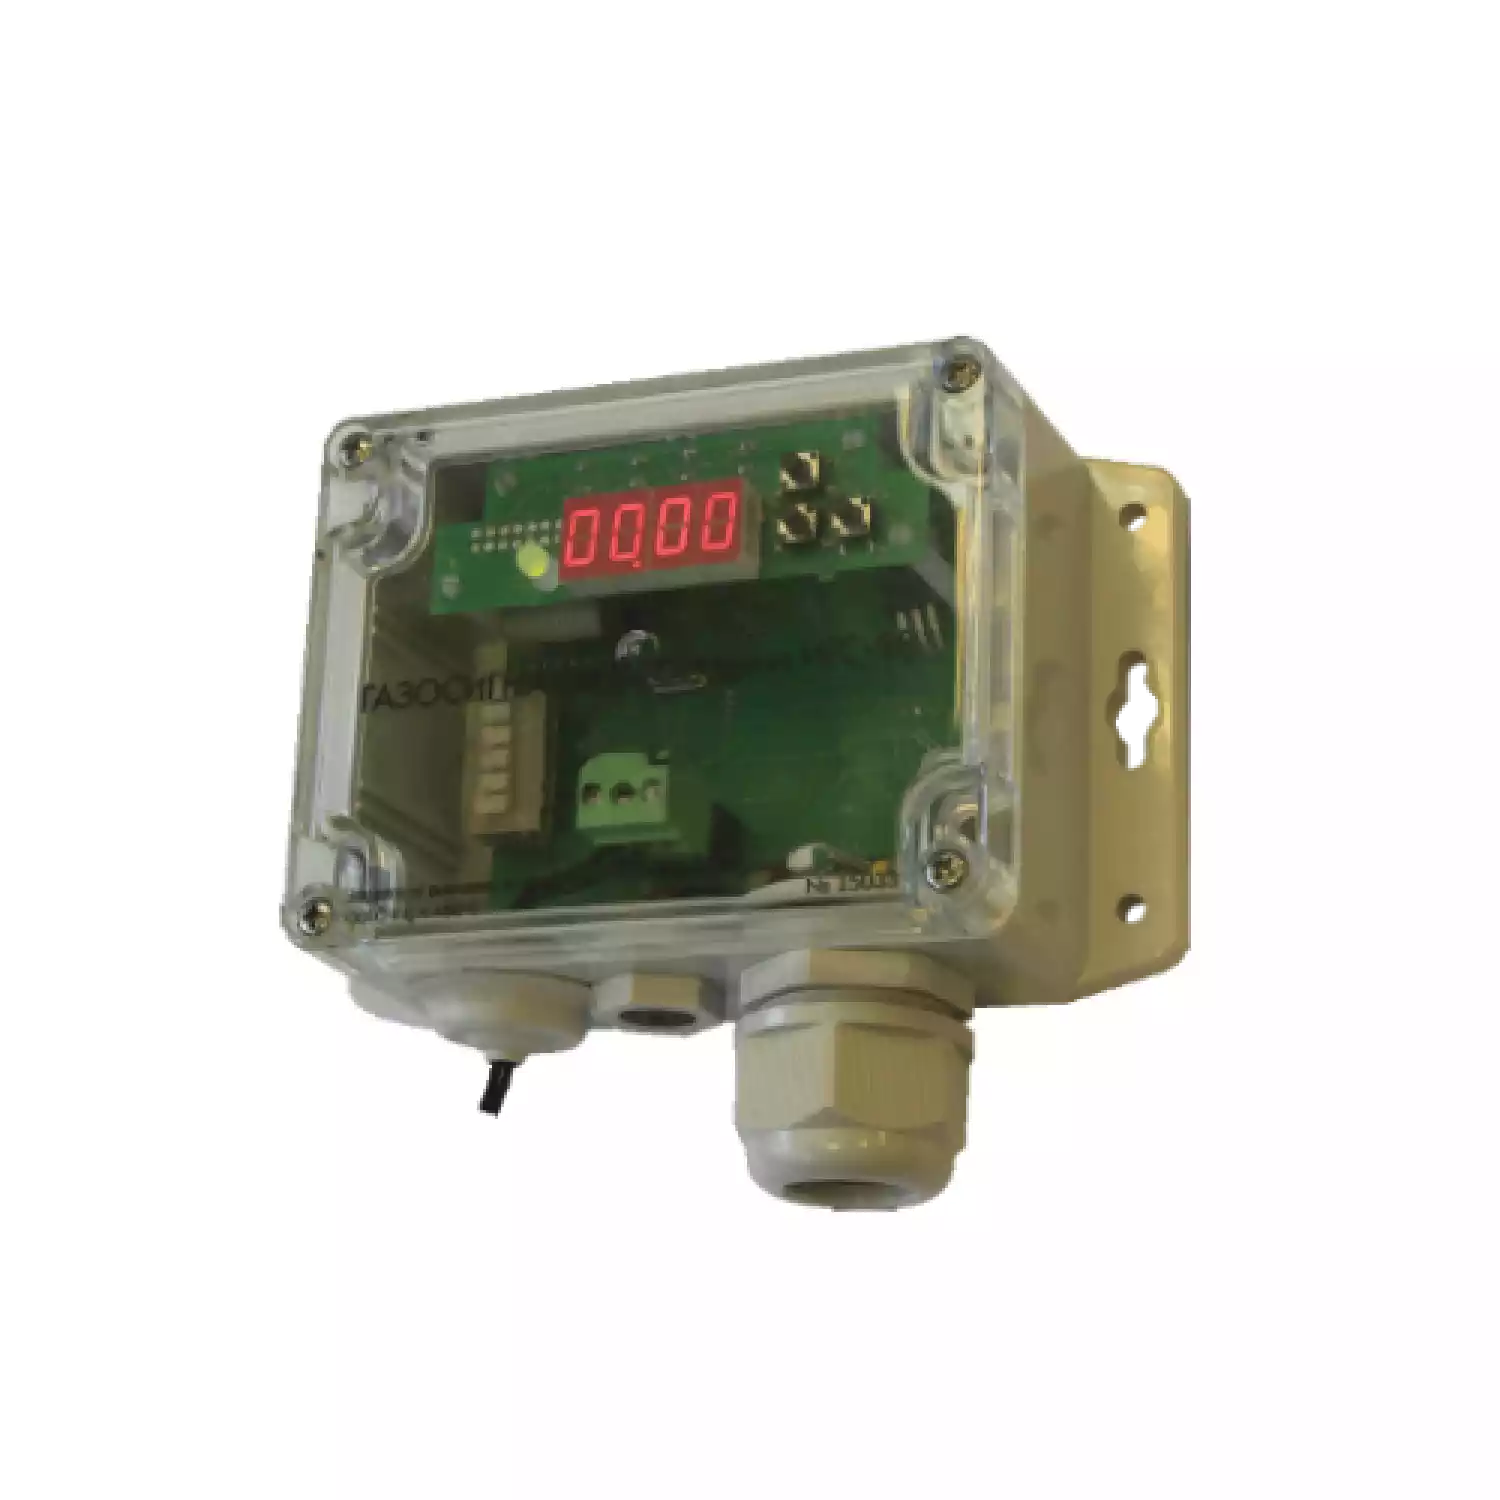 Сапфир-СВ серии ИГС-98 газосигнализатор стационарный на диоксид серы SО2 исполнение 011 - 1